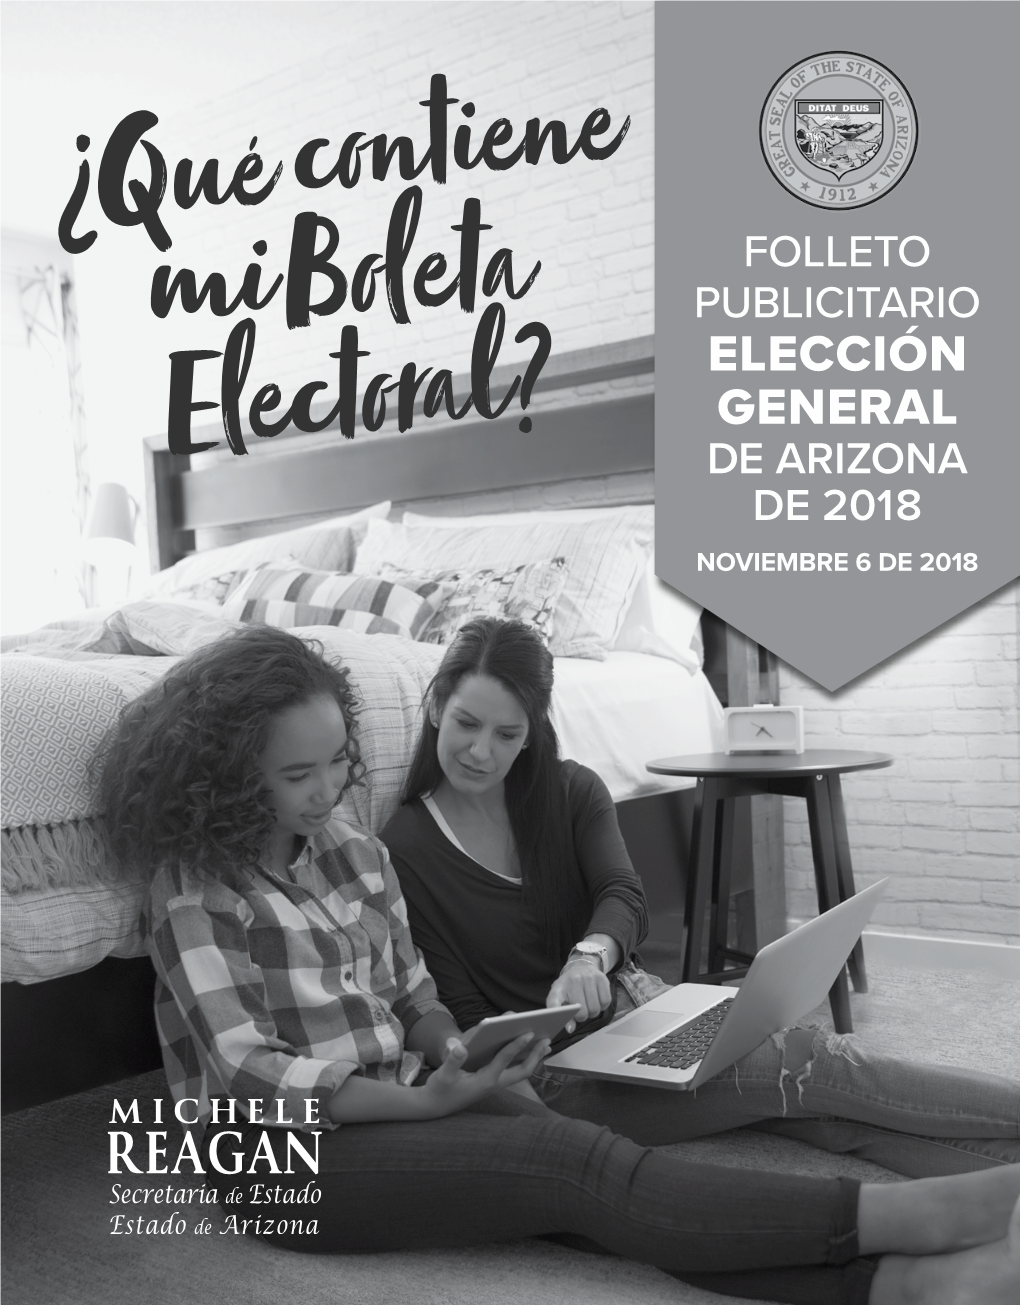 2018 General Election Publicity Pamphlet Elección General